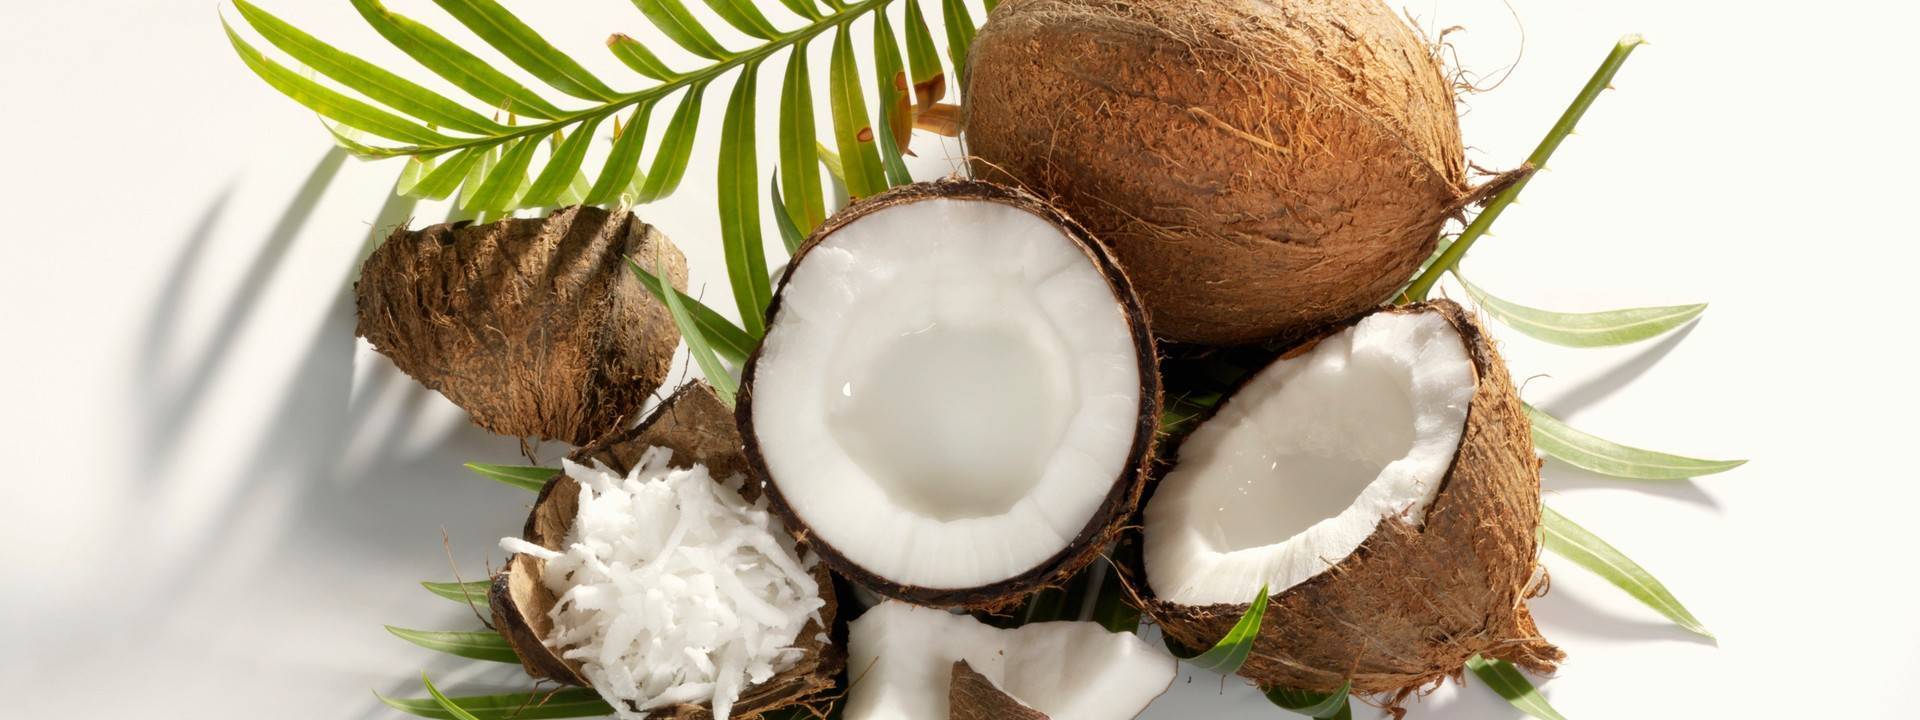 Кокос: калорийность и пищевая ценность. обзор полезных и вредных качеств кокоса, противопоказаний к употреблению и где используют